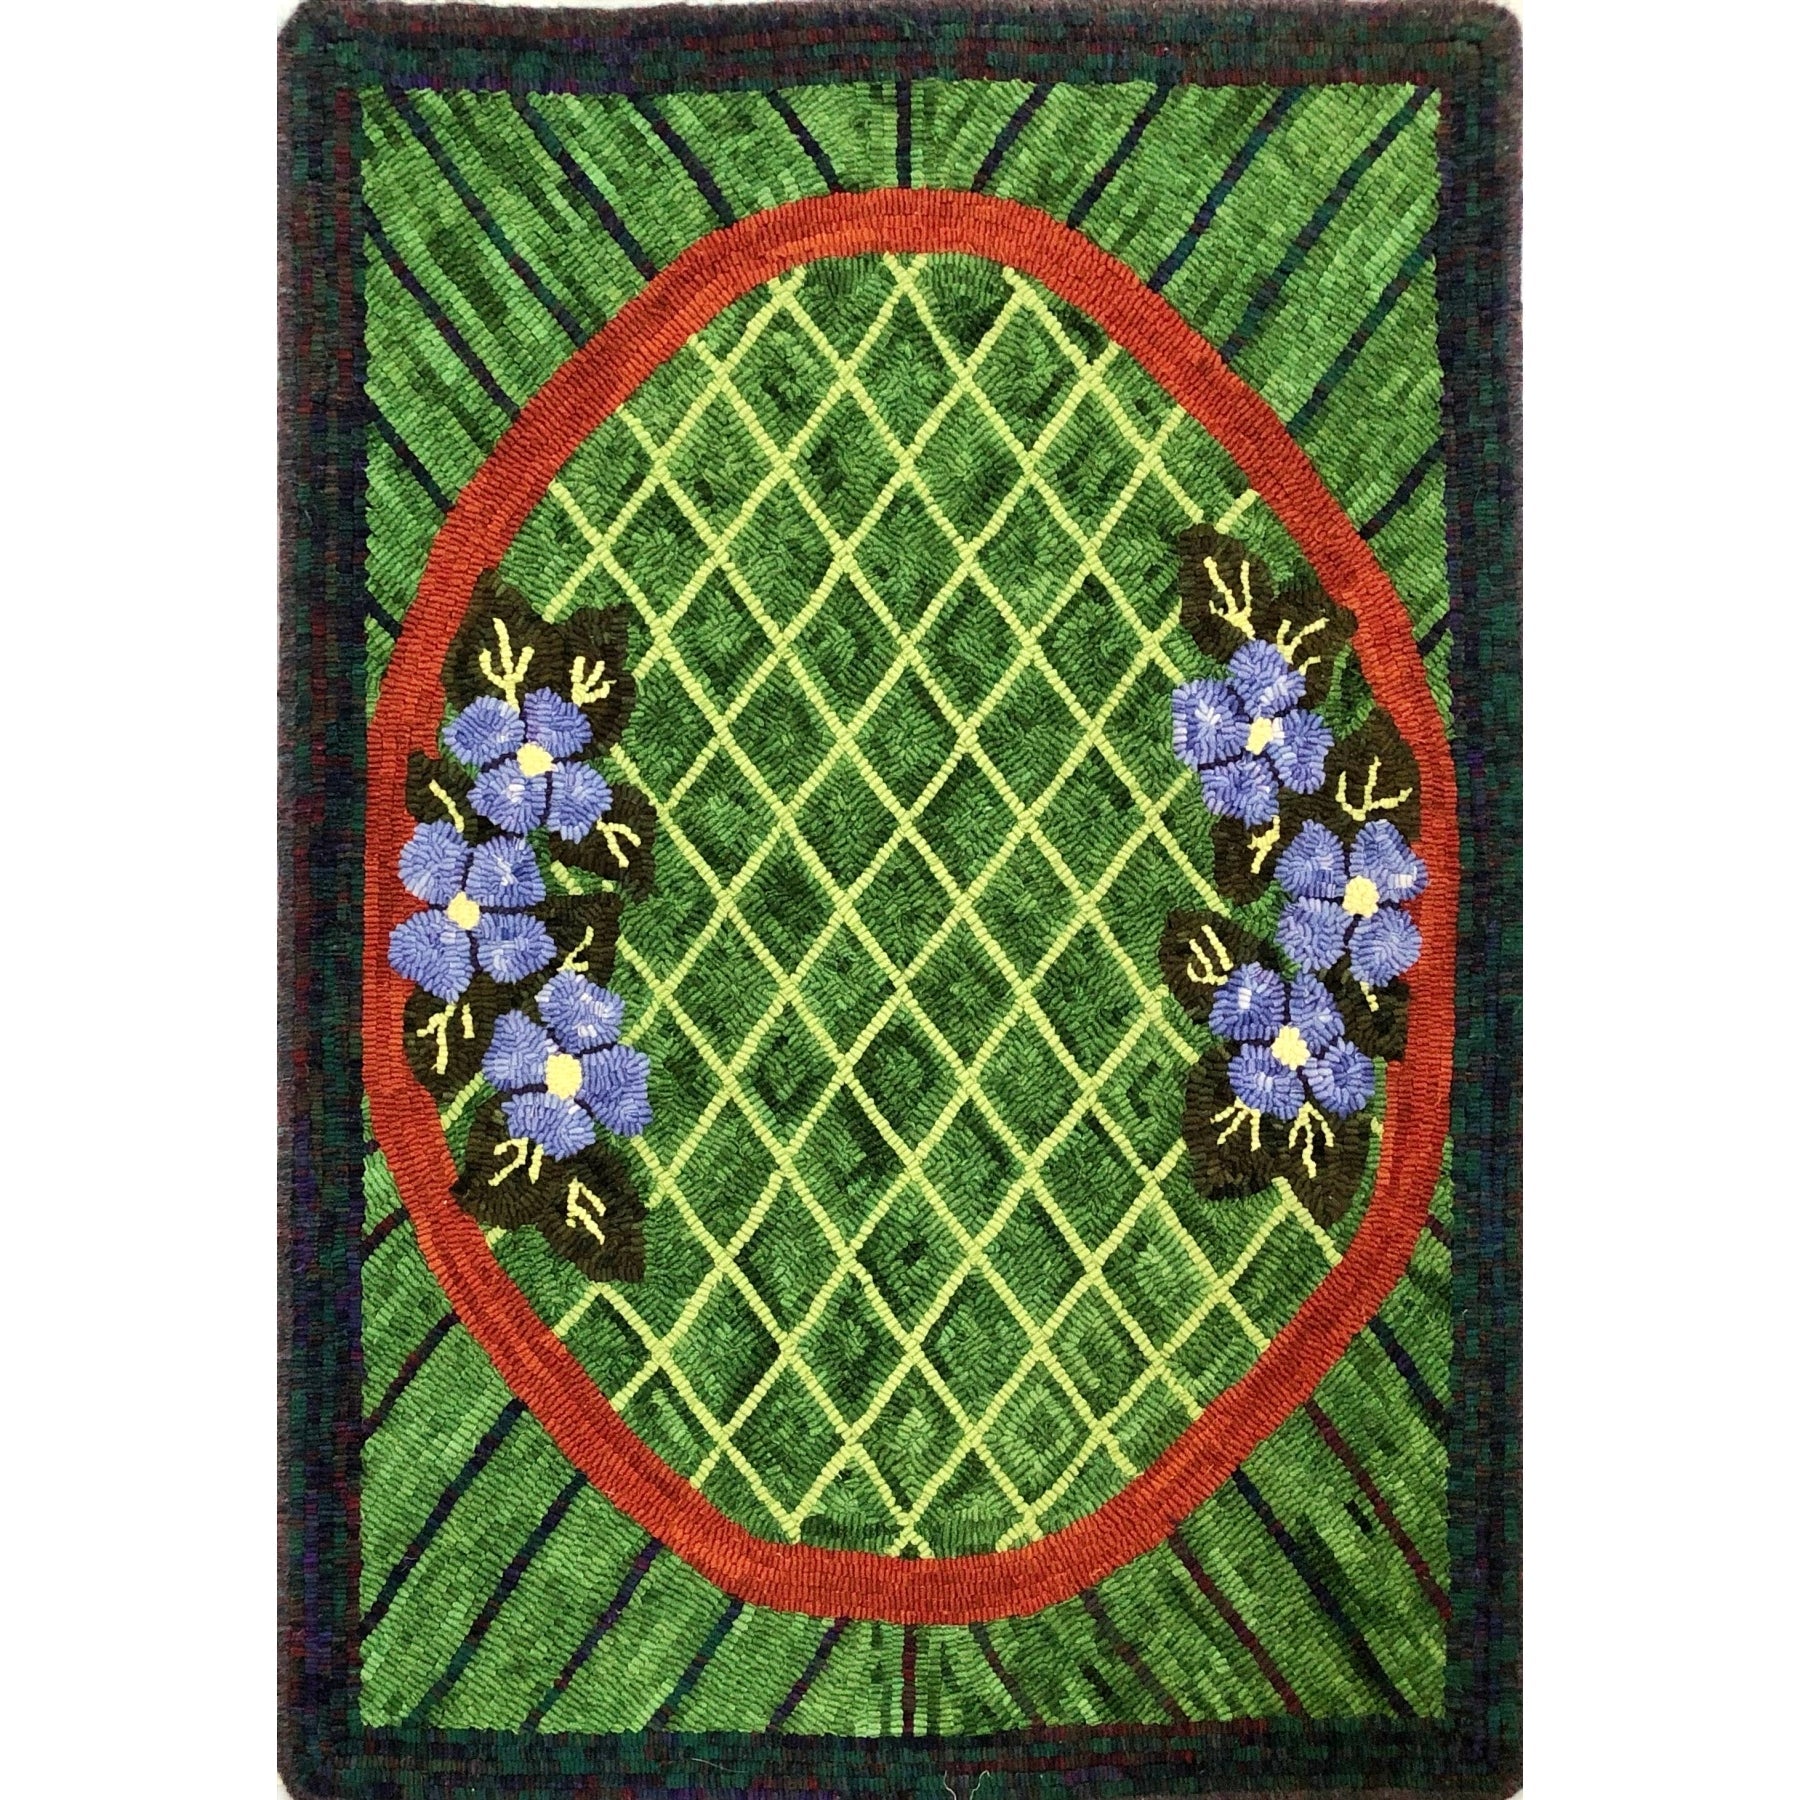 Grandmother's Rug, rug hooked by Joyce Lemoine